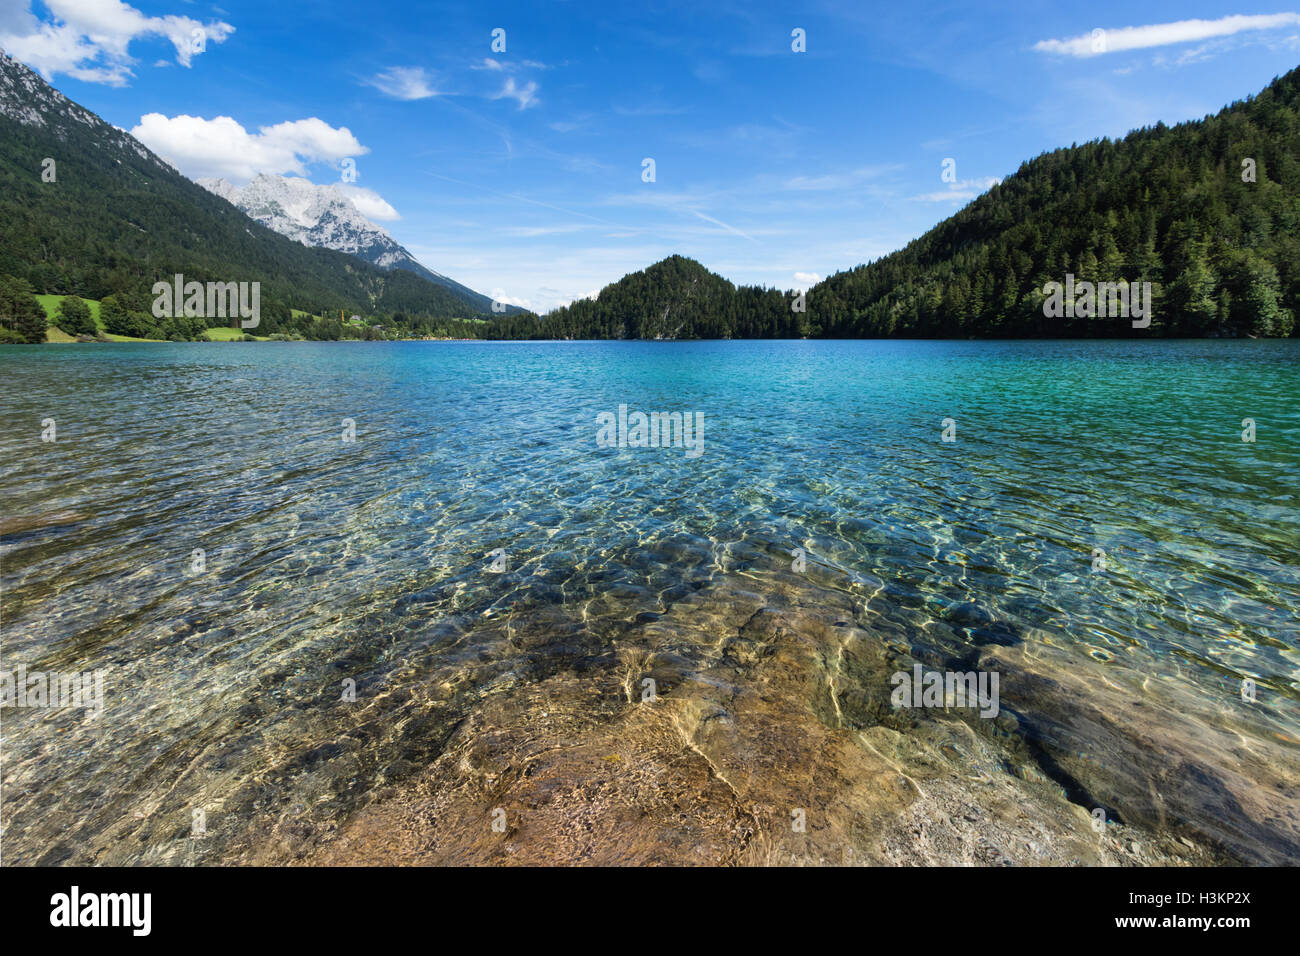 Lac de montagne avec de l'eau bleu turquoise. L'Autriche, Tyrol, lac Hintersteiner Banque D'Images